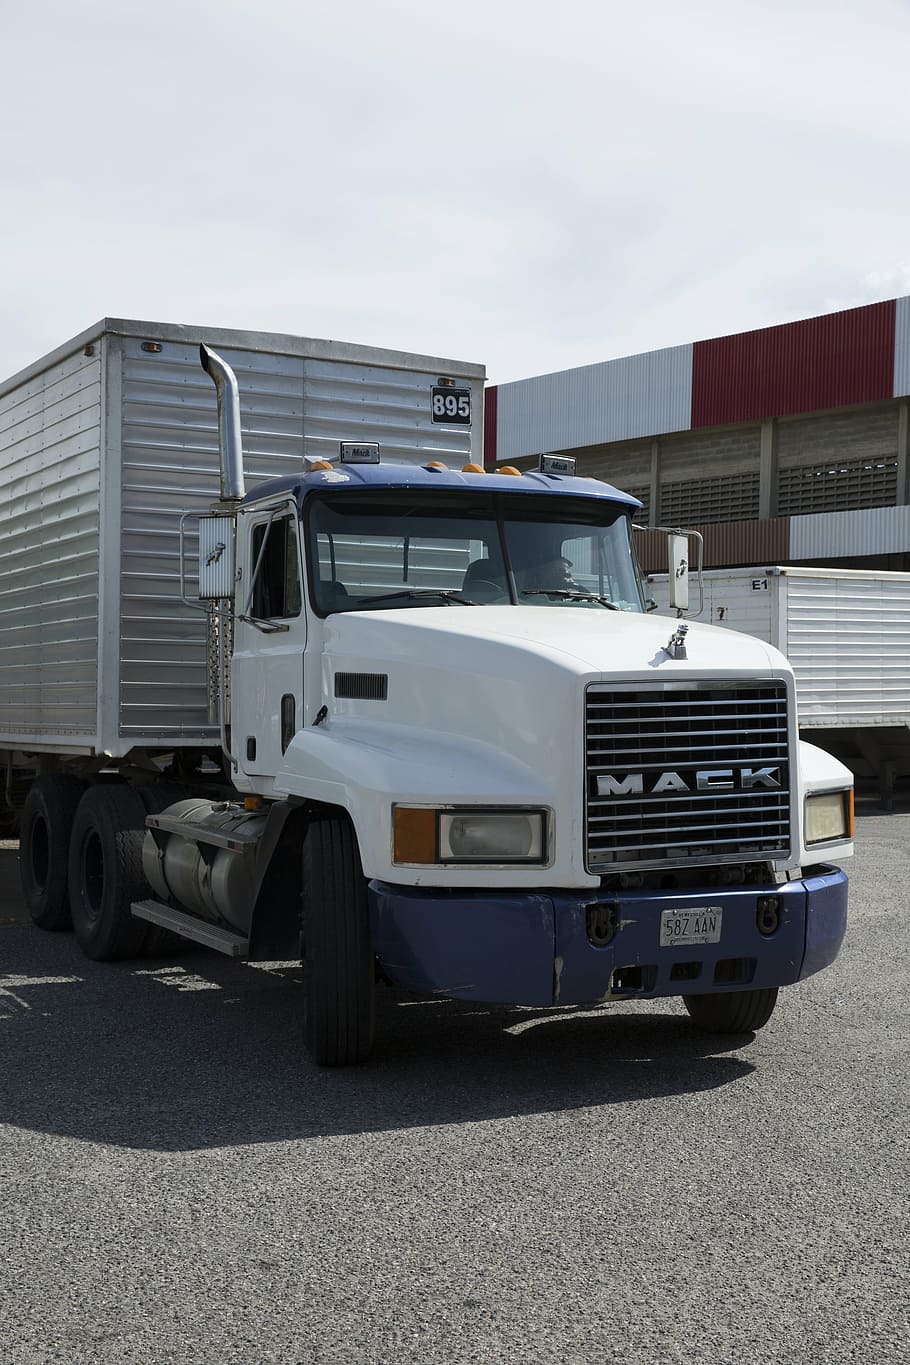 caminhão mack branco, caminhão, carro, automóvel pesado, automóvel, transporte, pesado, veículo, roda, equipamento